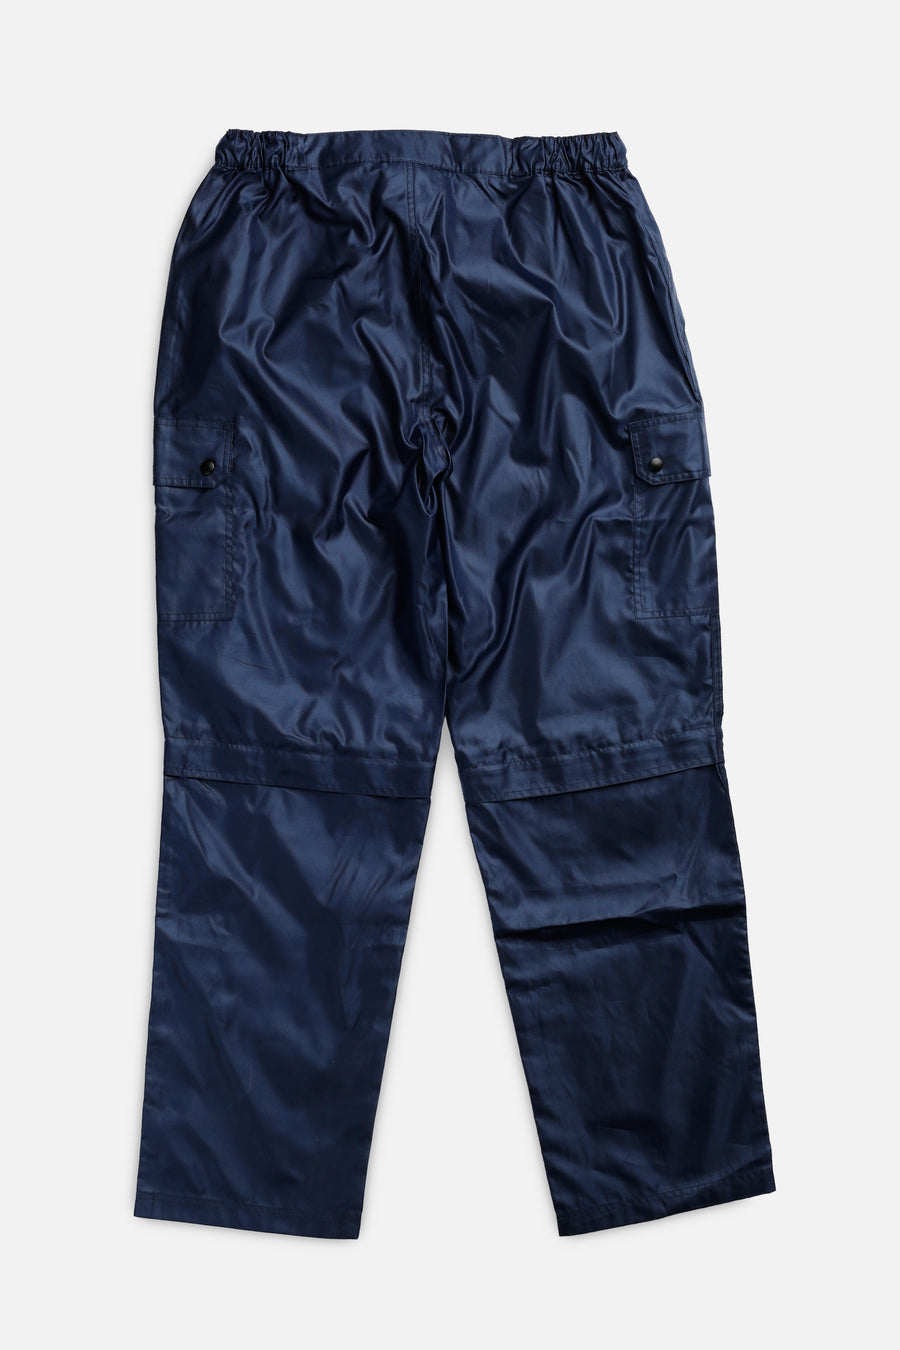 Vintage Fubu Windbreaker Pants - L